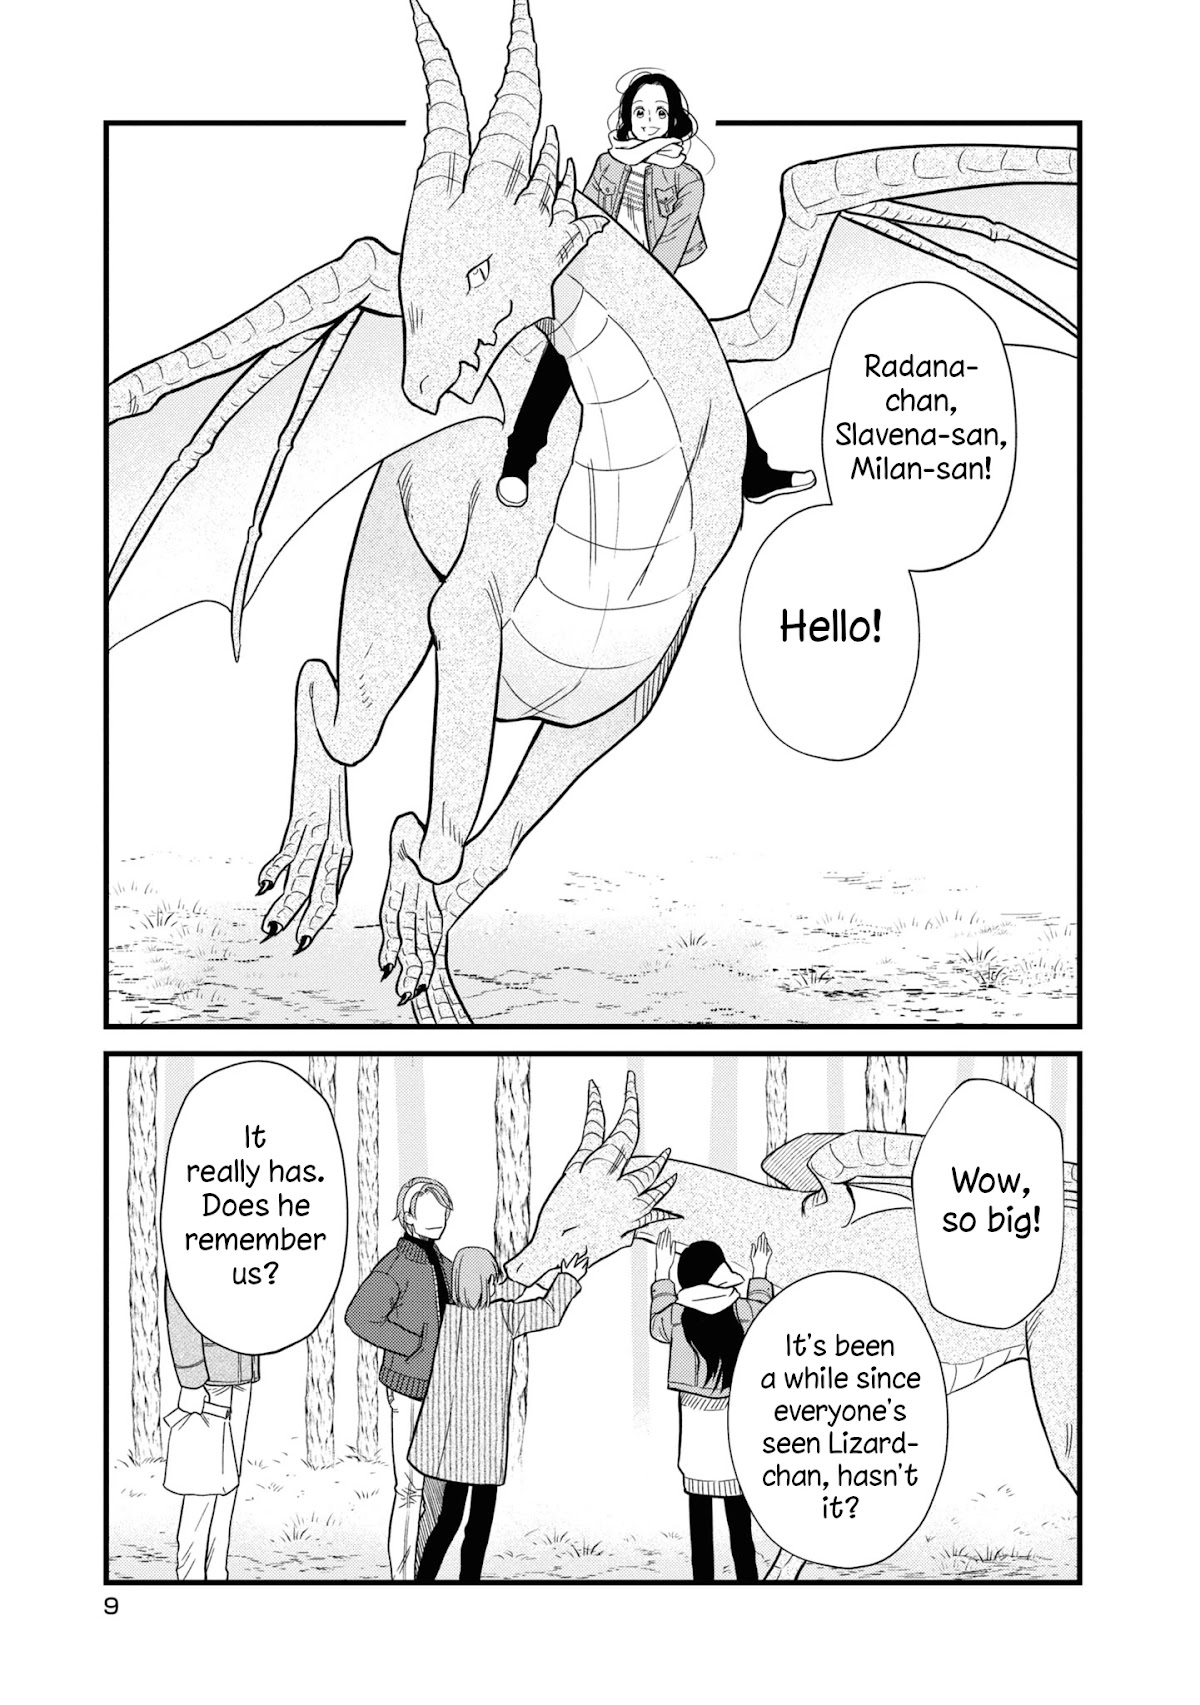 Daidokoro No Dragon Chapter 25